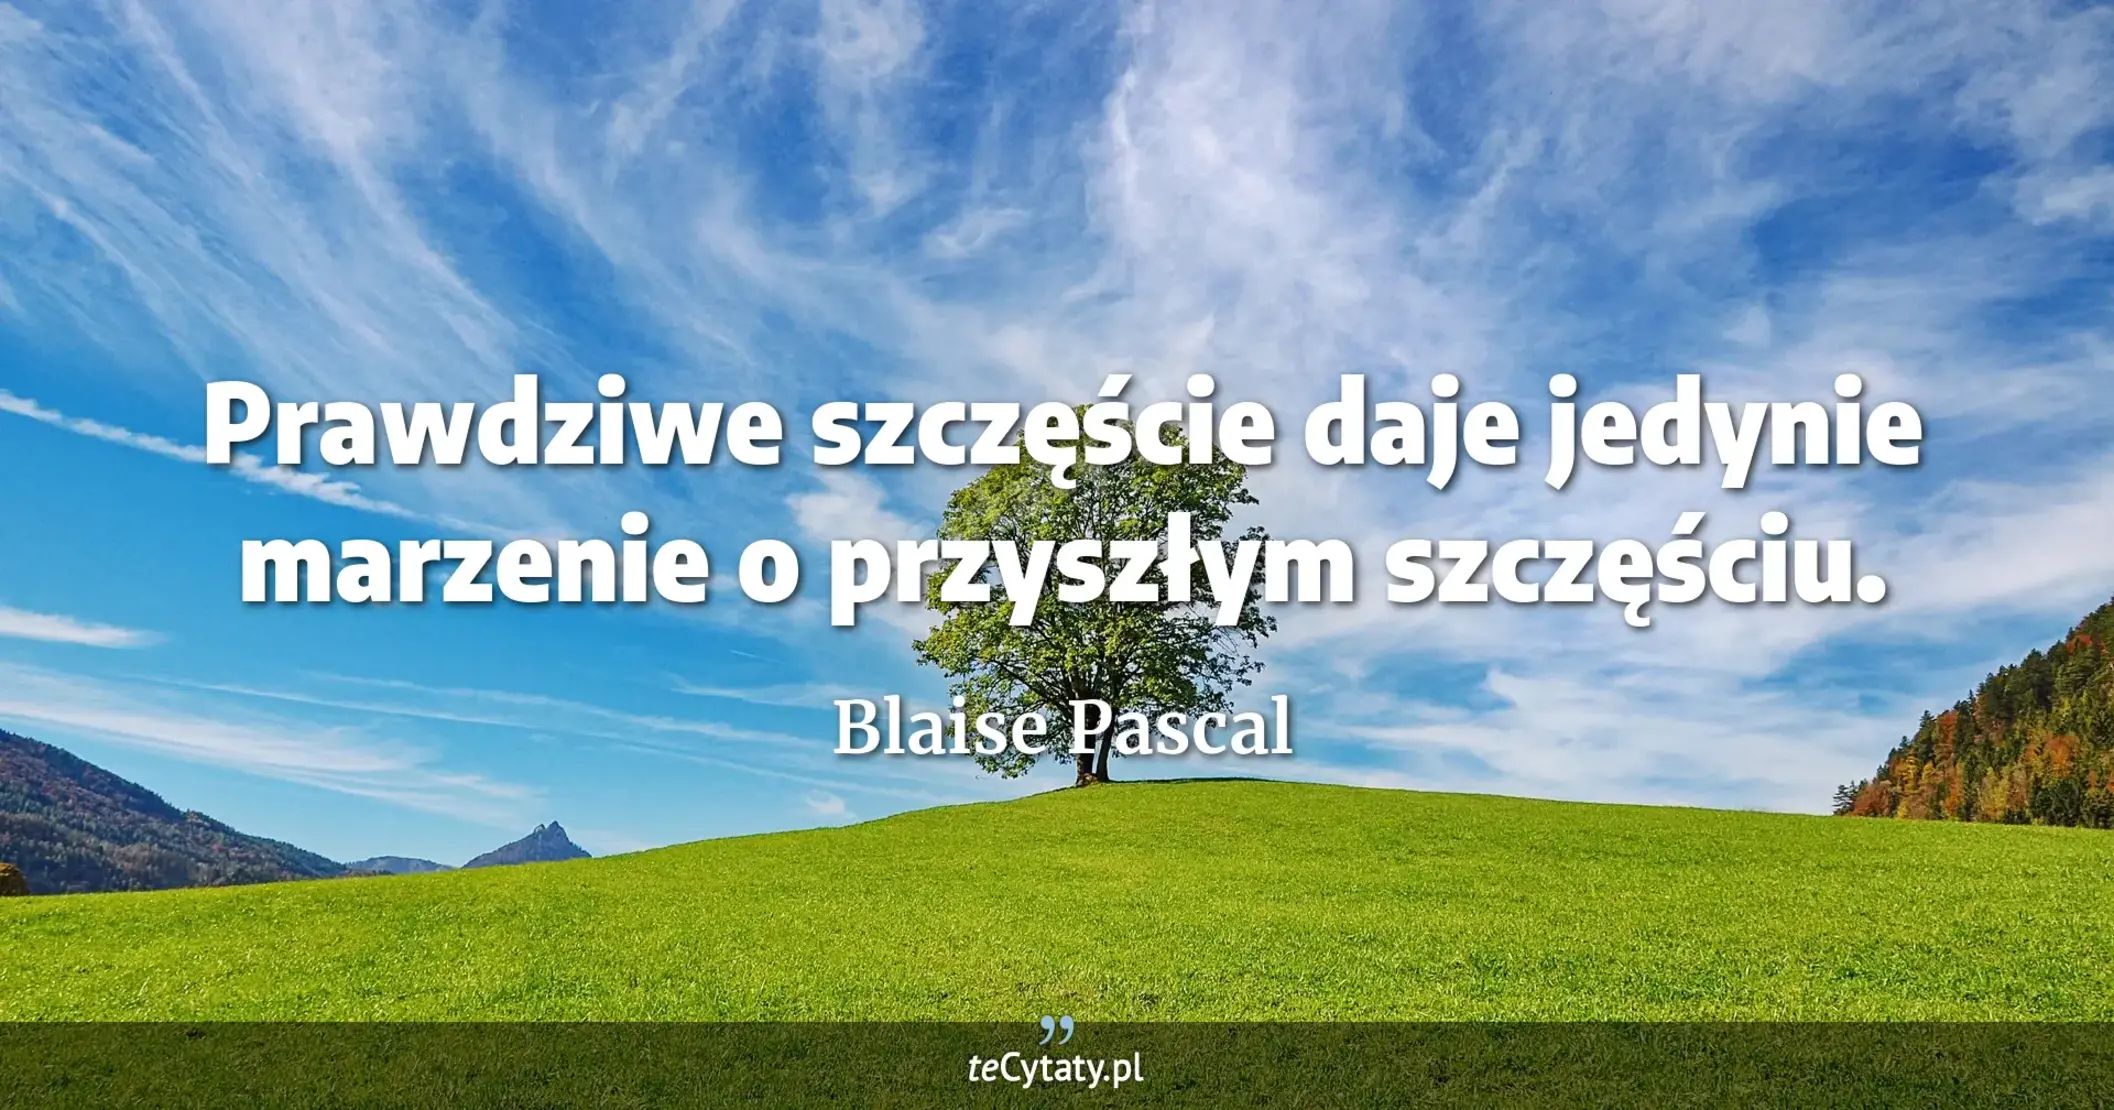 Prawdziwe szczęście daje jedynie marzenie o przyszłym szczęściu. - Blaise Pascal